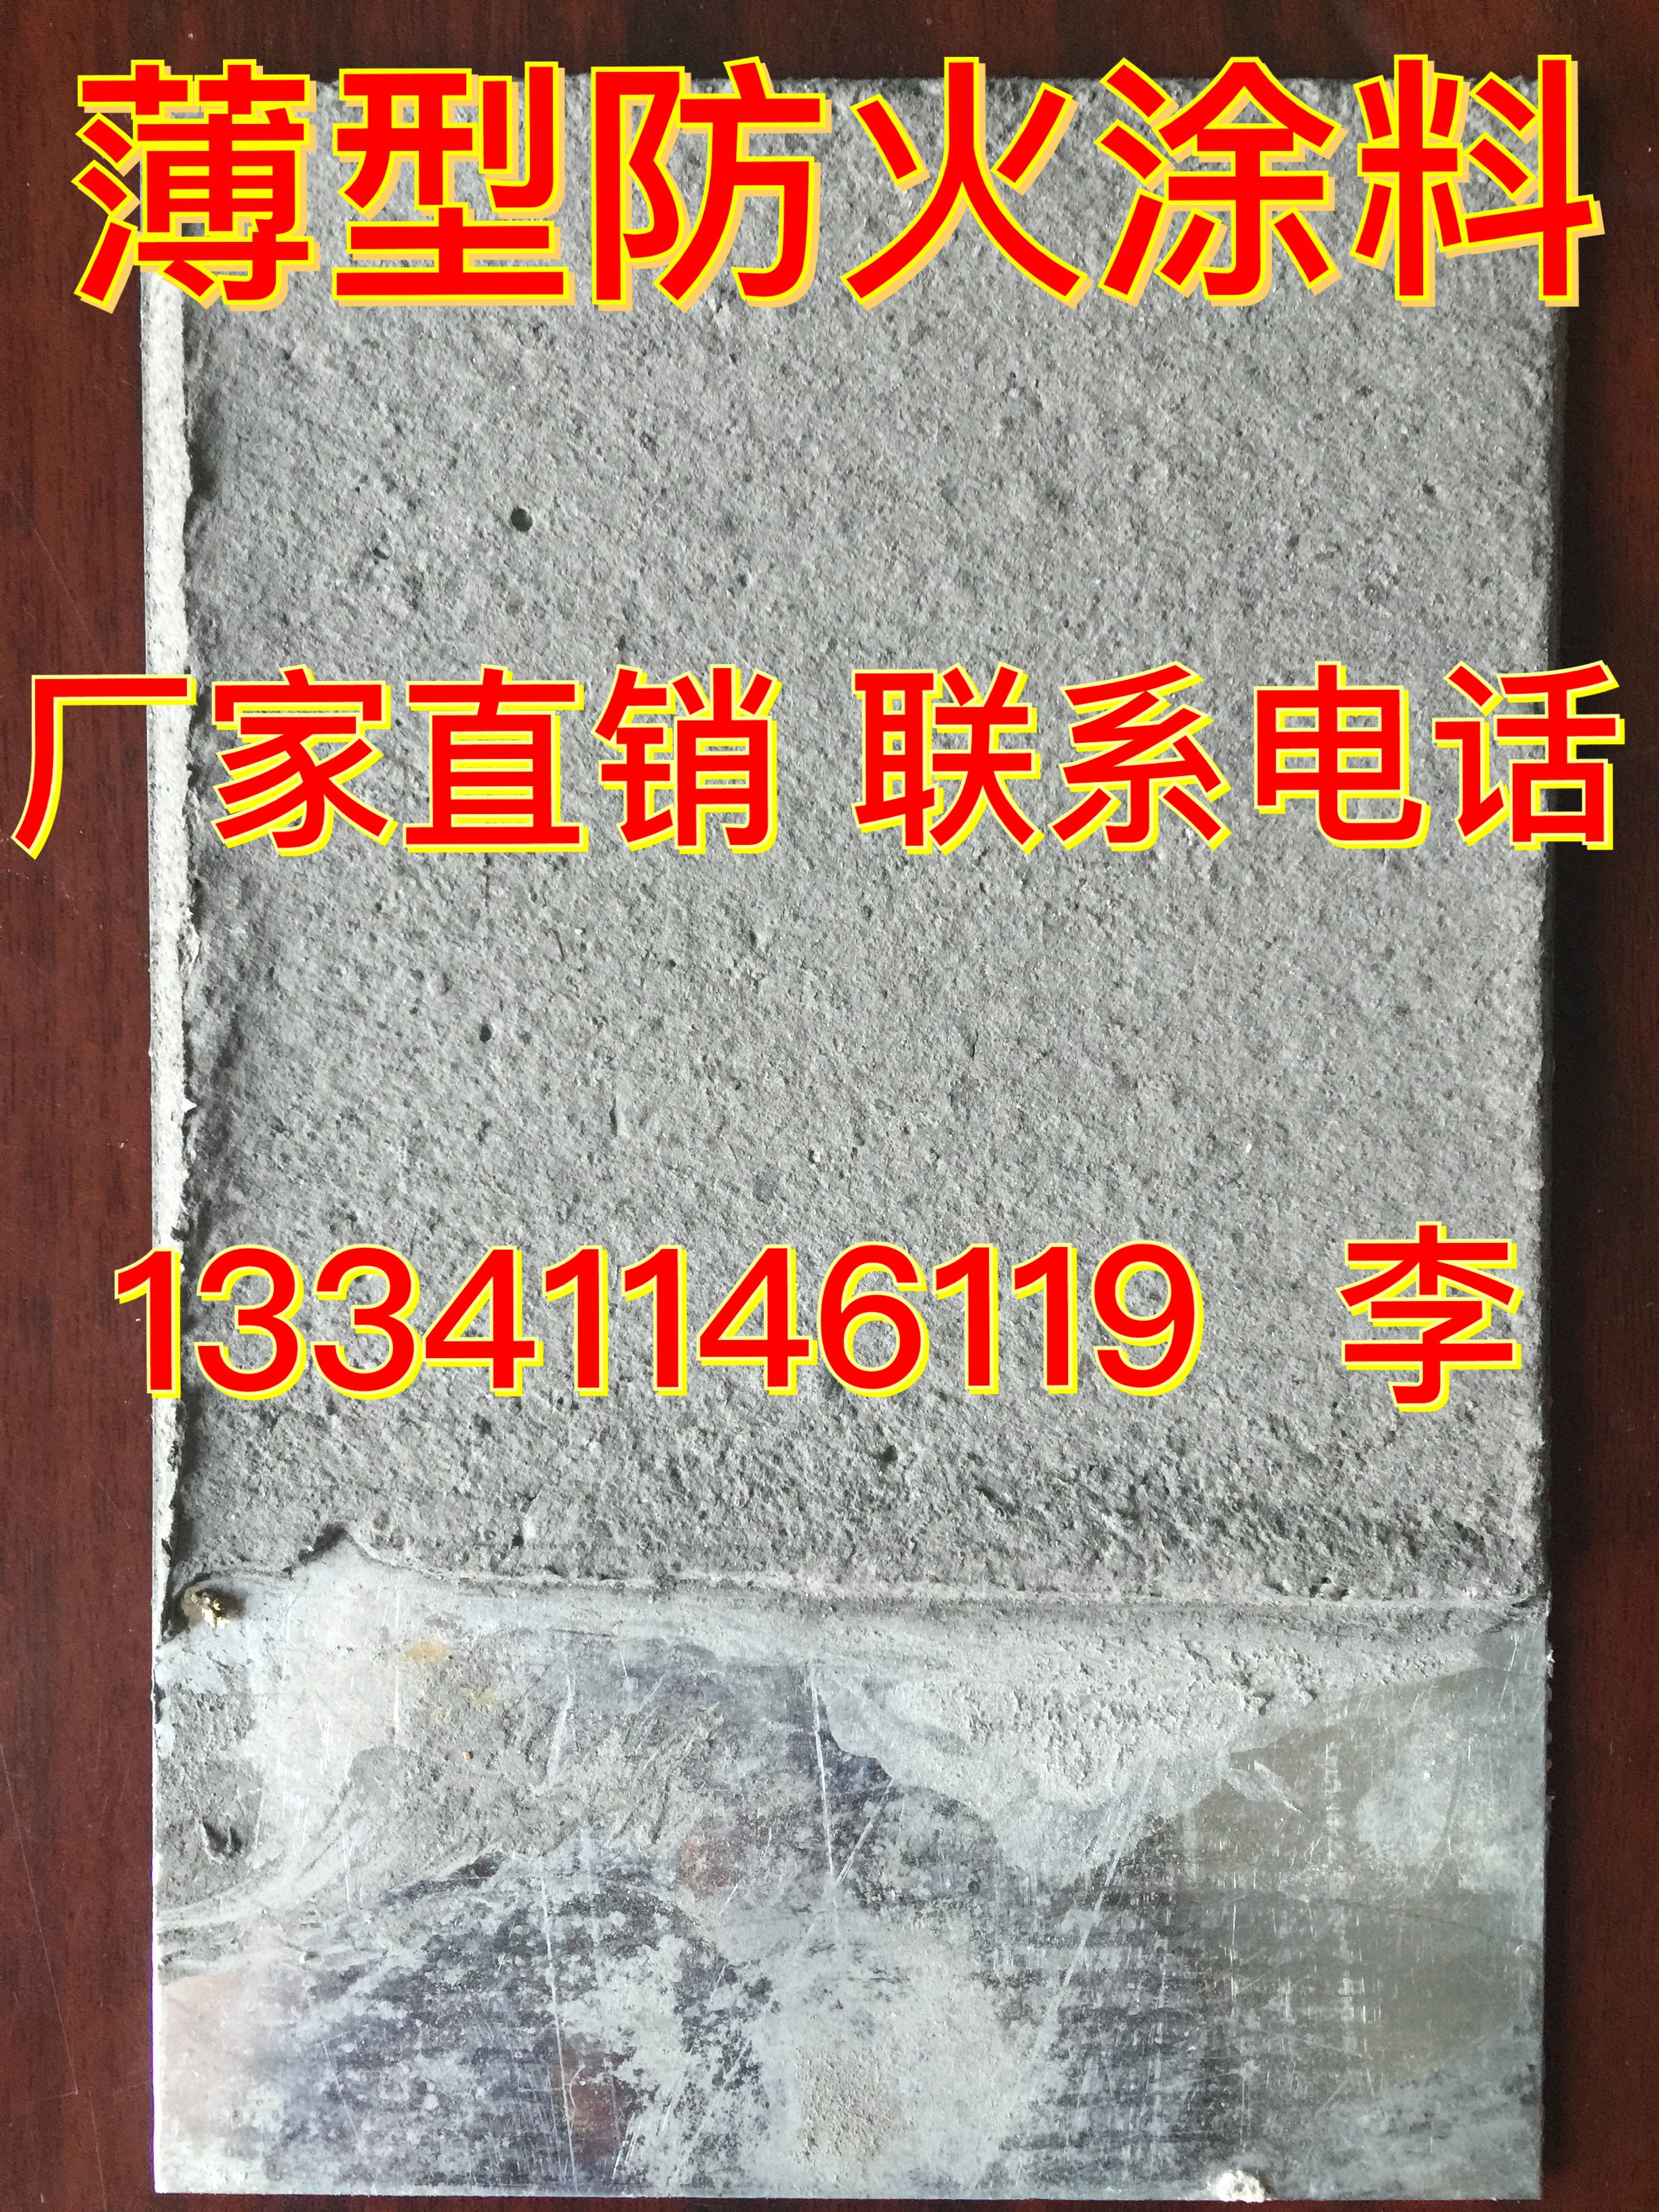 供应用于钢结构的北京钢结构防火涂料厂家 钢结构防火涂料 北京钢结构防火涂料厂家直销图片